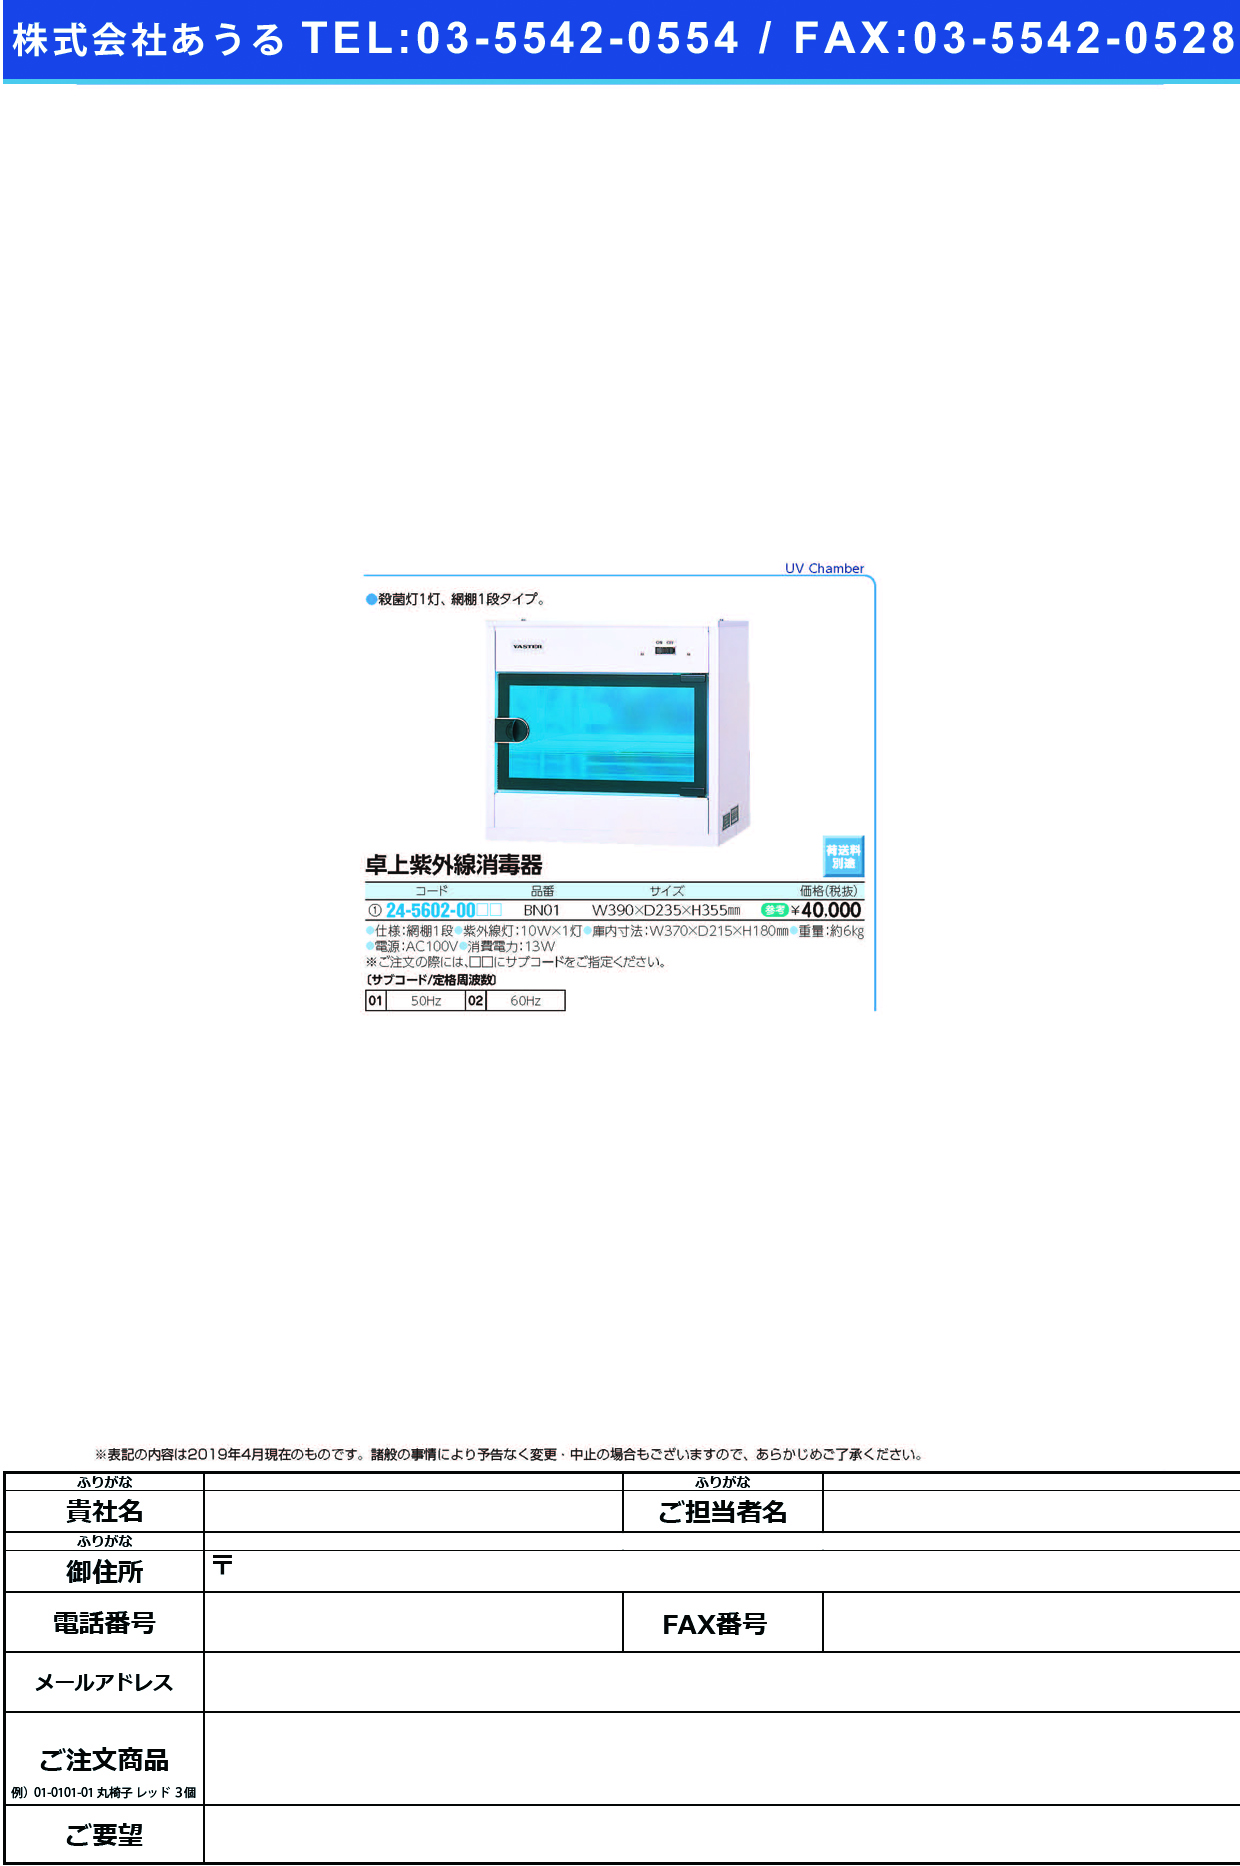 (24-5602-00)卓上紫外線消毒器 BN01 ﾀｸｼﾞｮｳｼｶﾞｲｾﾝｼｮｳﾄﾞｸｷ ６０Ｈｚ【1台単位】【2019年カタログ商品】